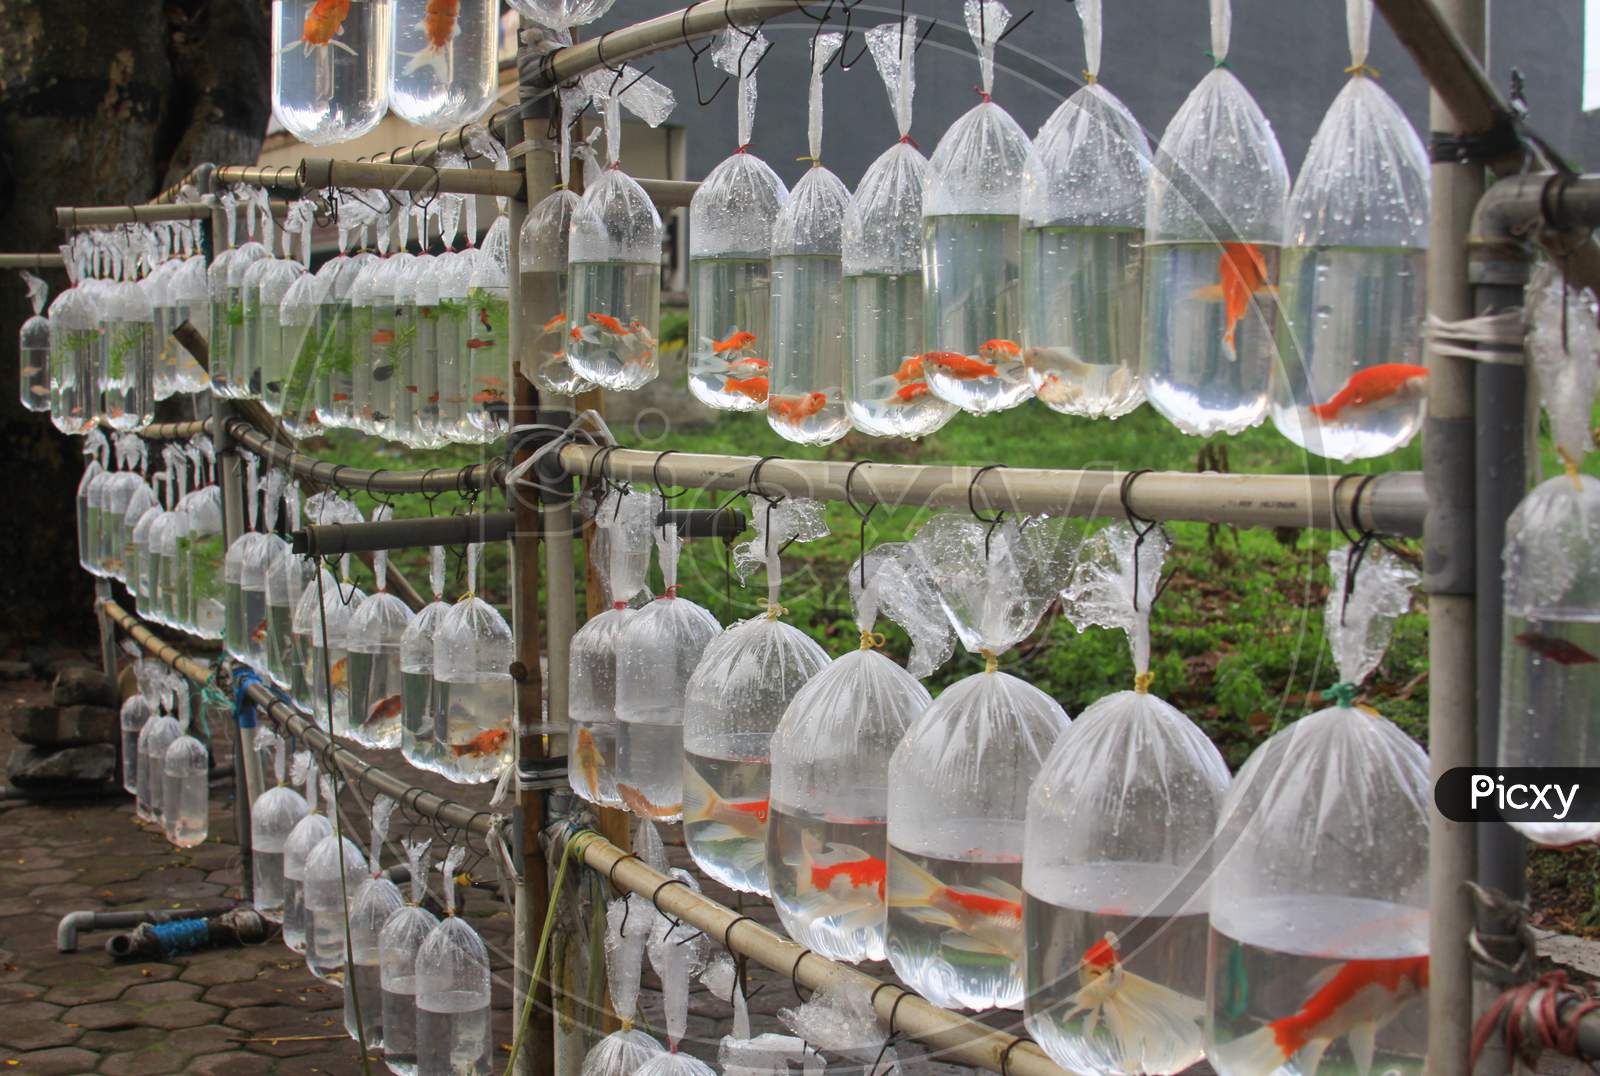 Orange Goldfish In Plastic Bags For Sale In Asia